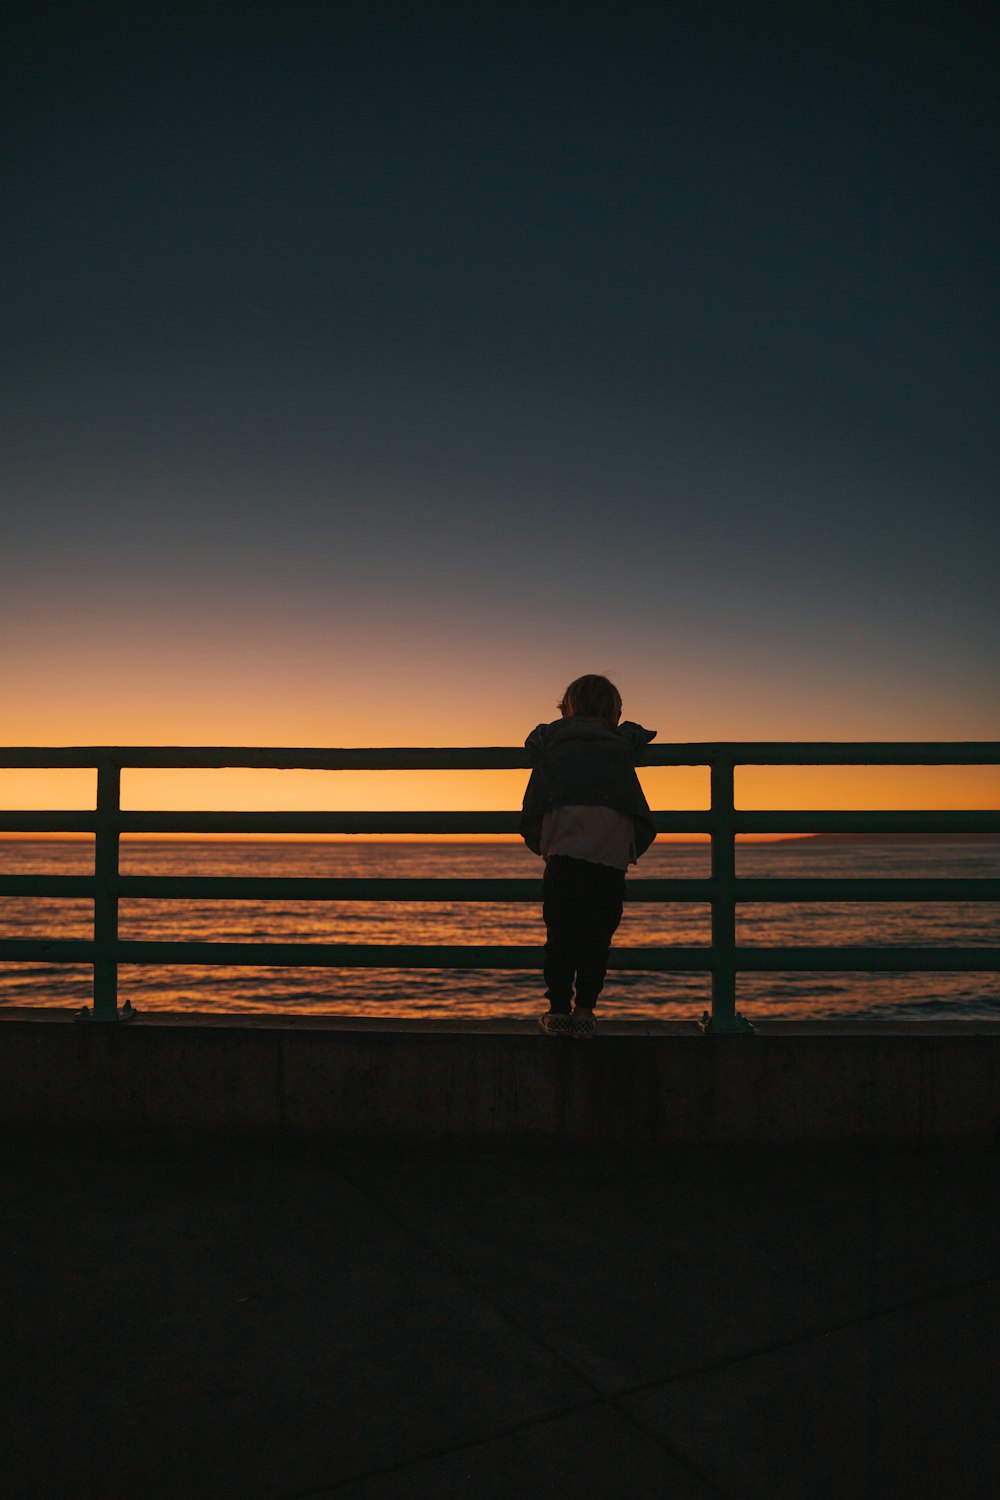 Photographie de silhouette d’une personne à la plage